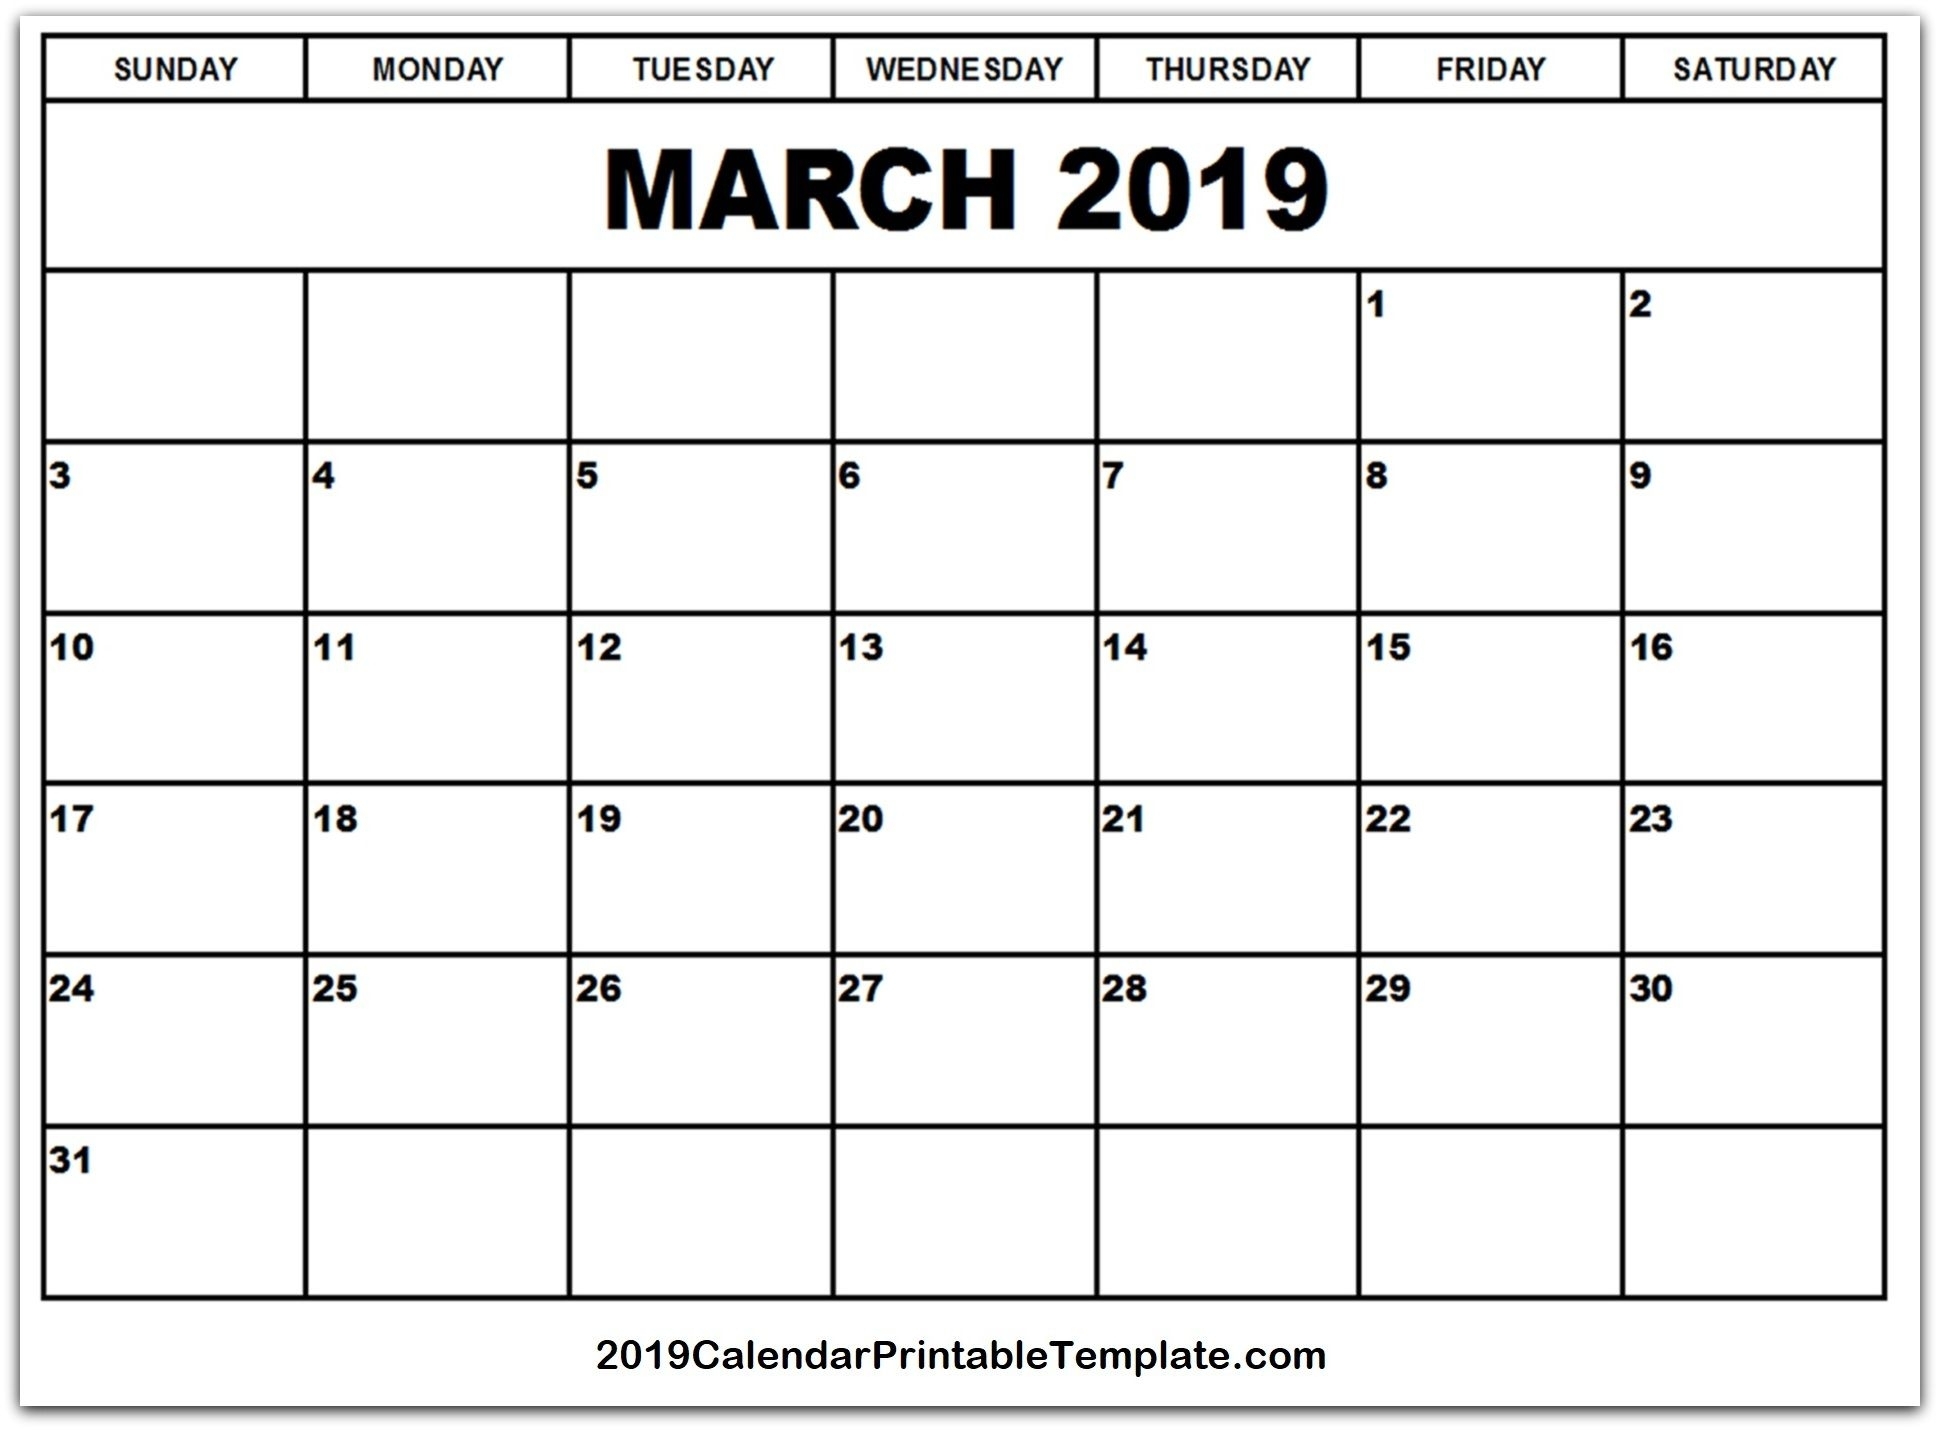 Pin2019Calendarprintabletemplate On March 2019 Calendar